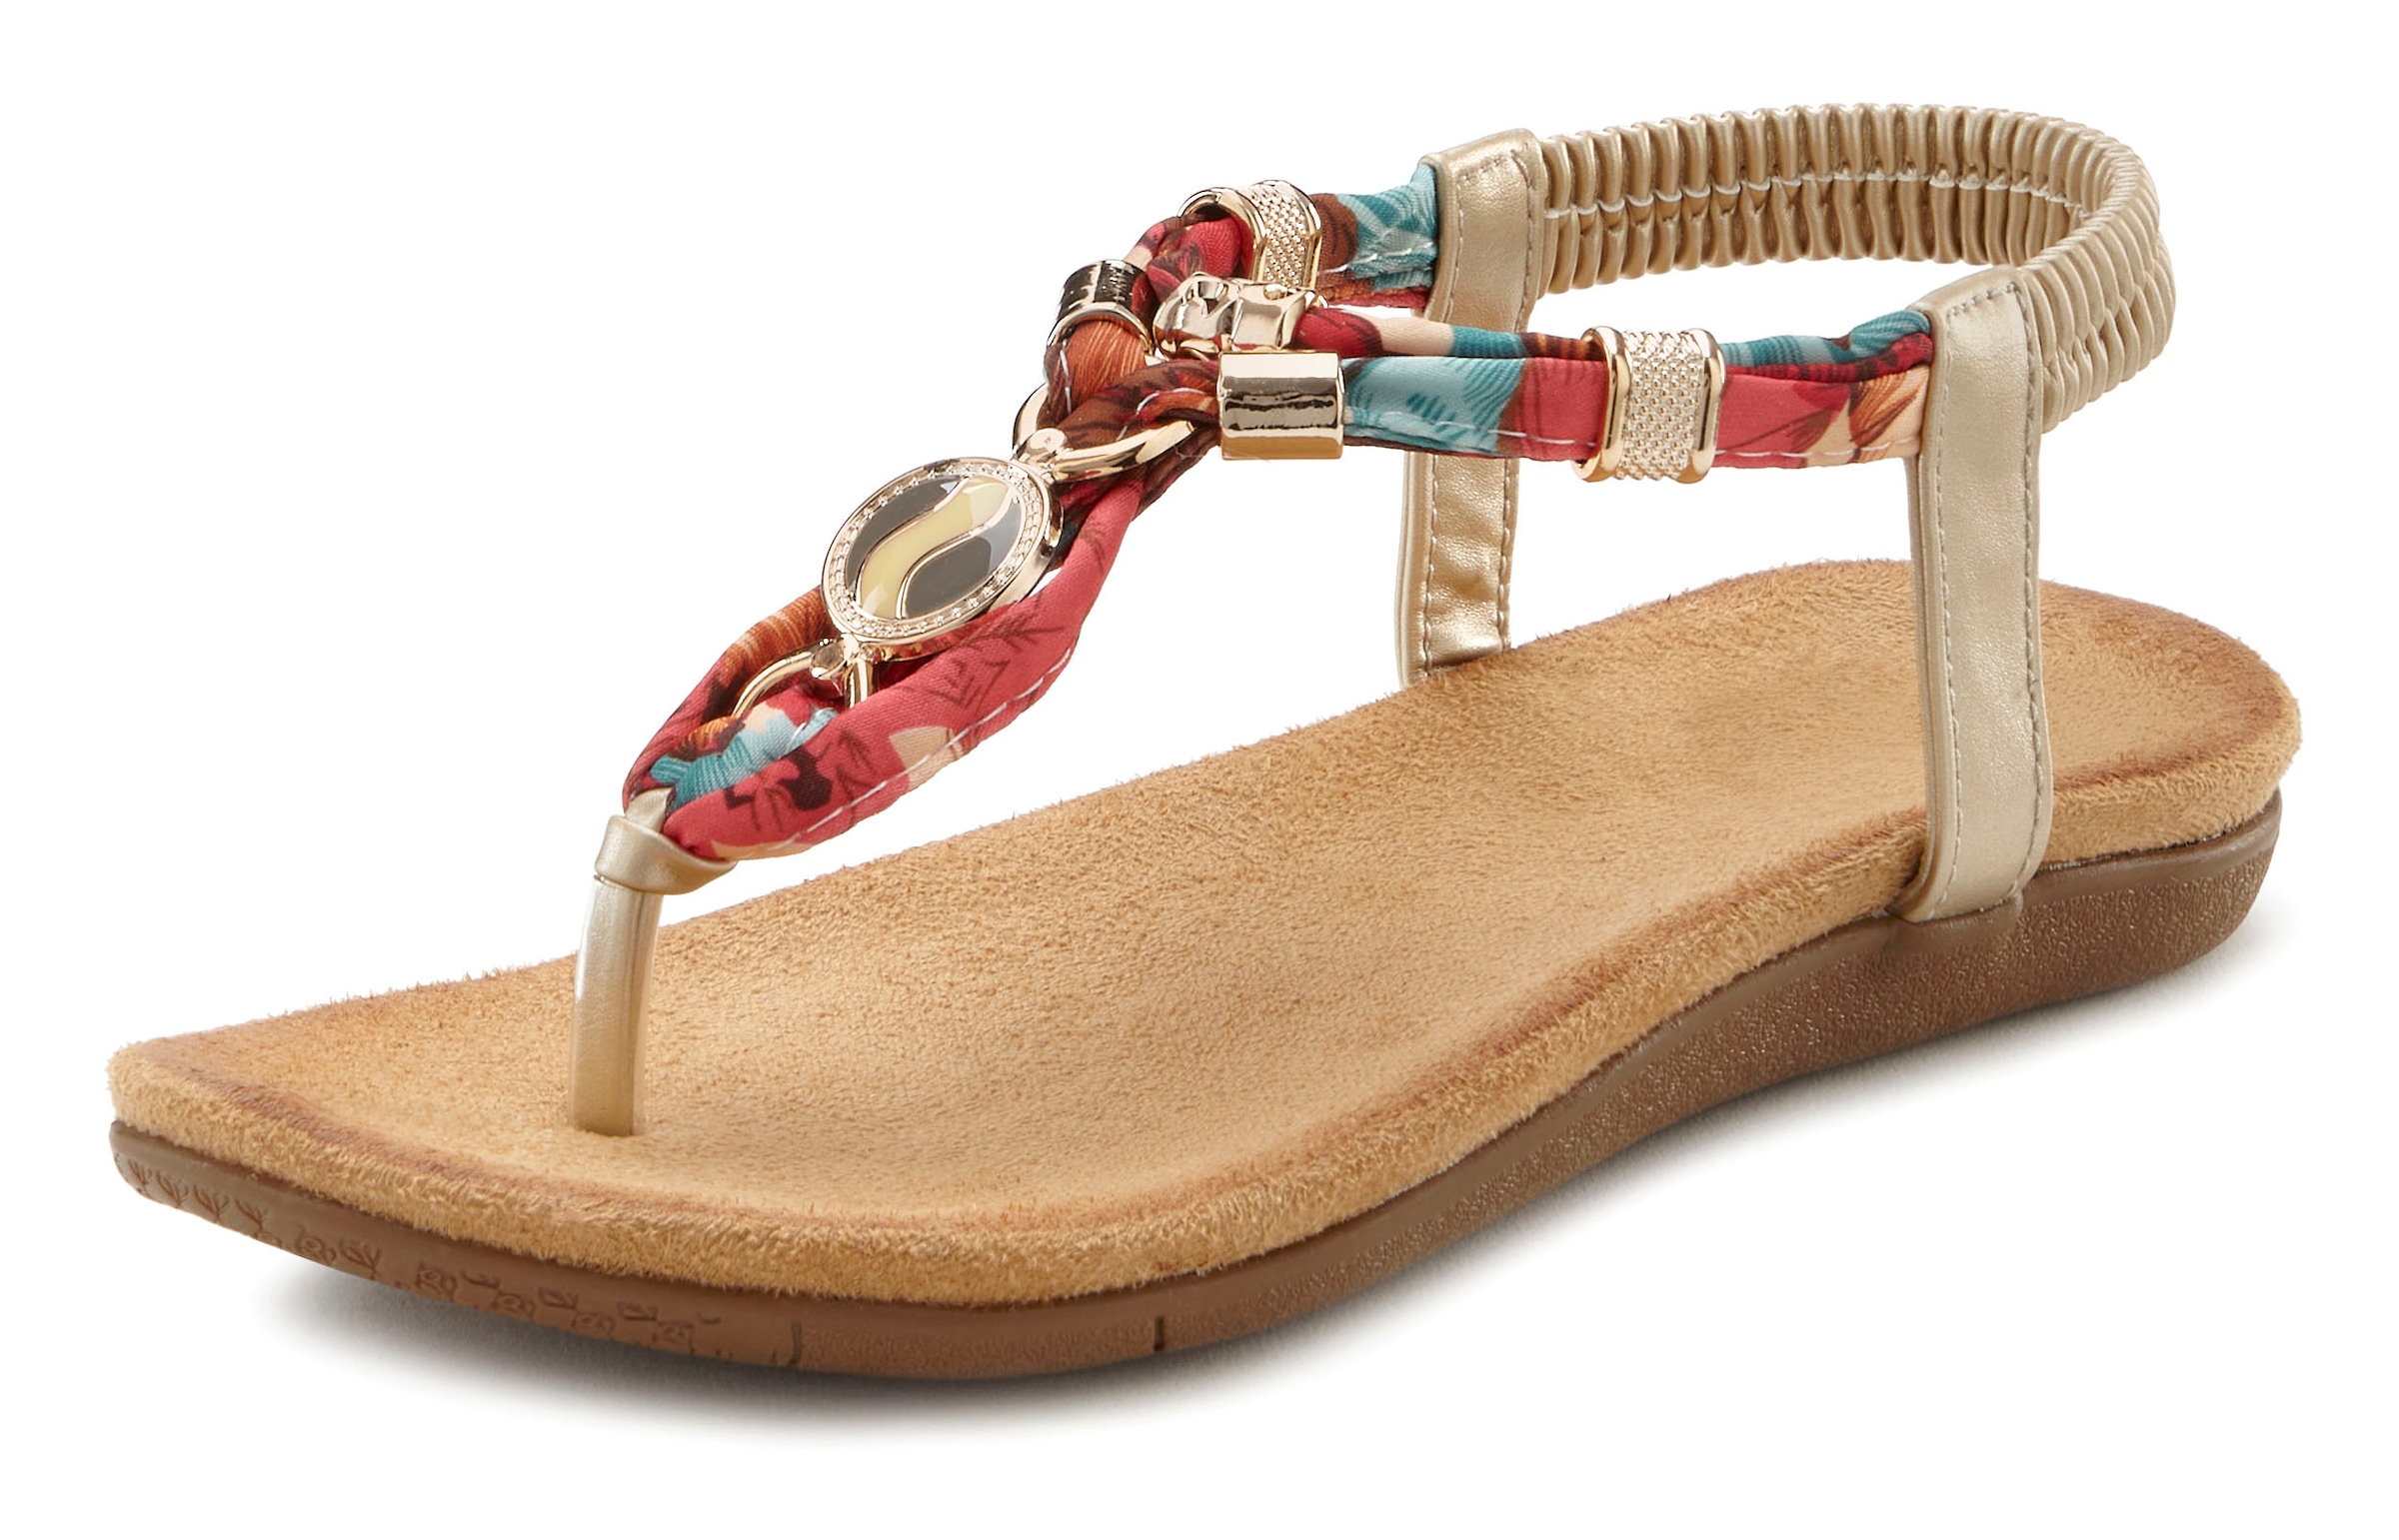 Zehentrenner, Sandale mit elastischen Riemchen und modischer Farbgebung